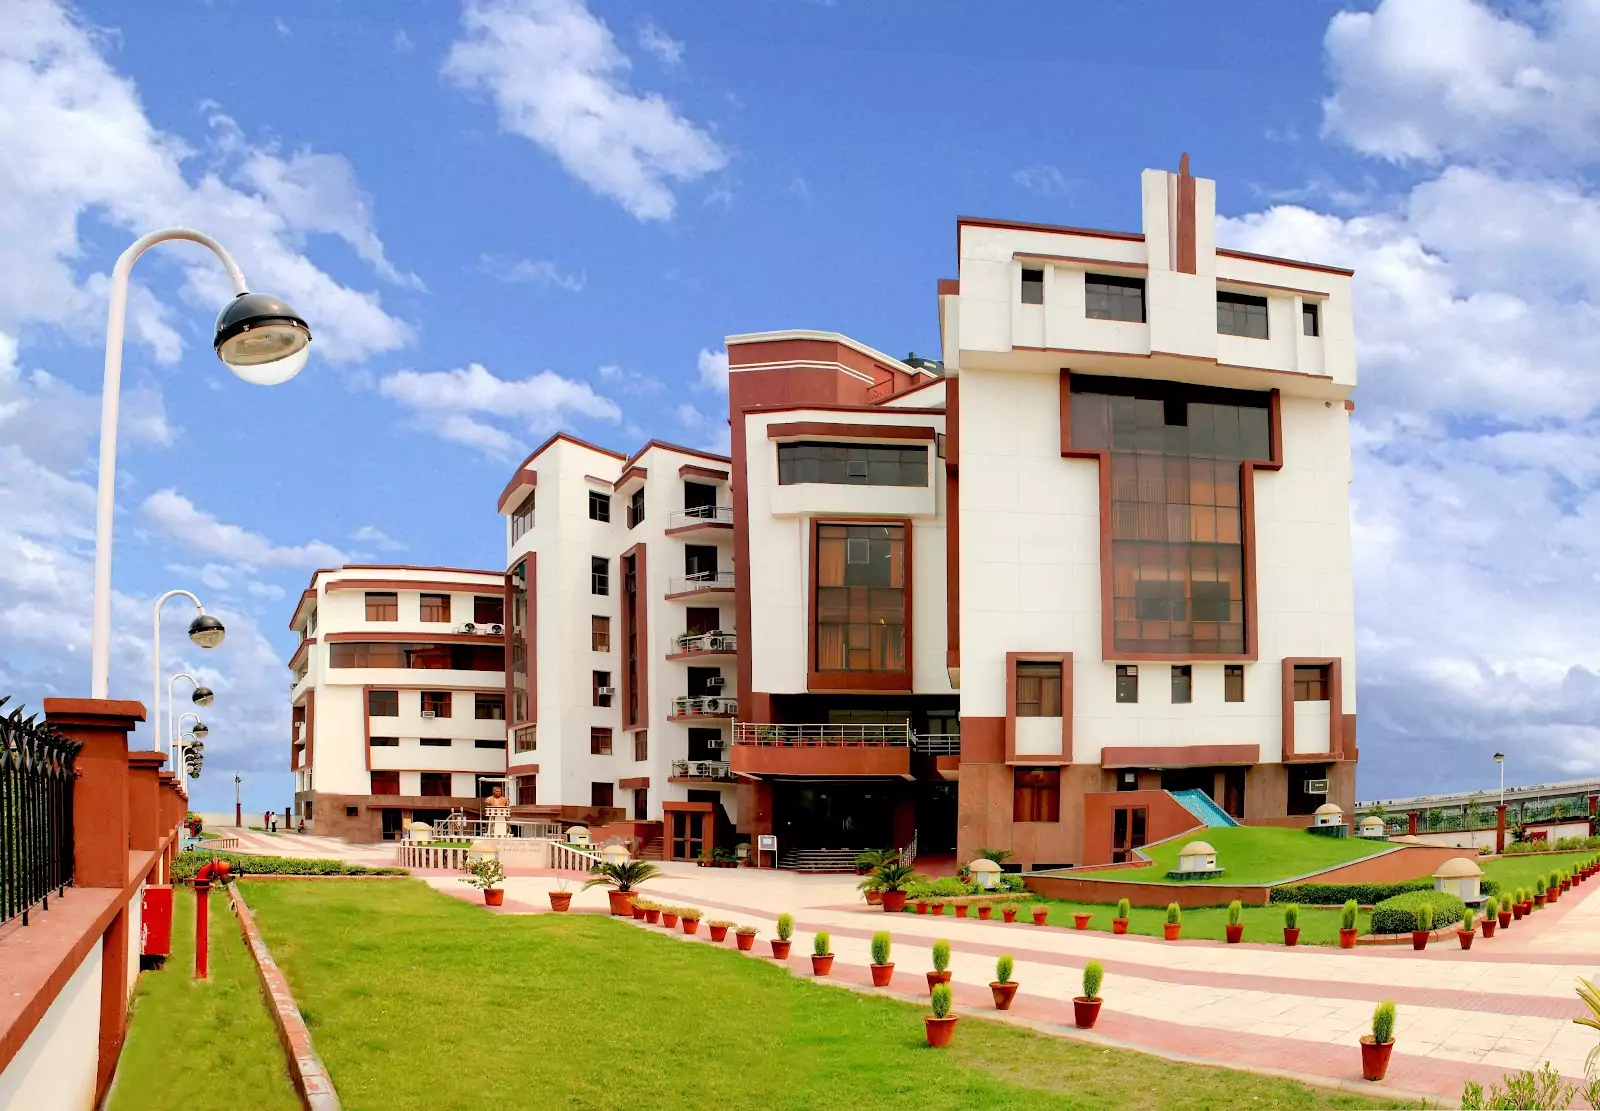 Lal Bahadur Shastri Institute of Management (LBSIM), New Delhi